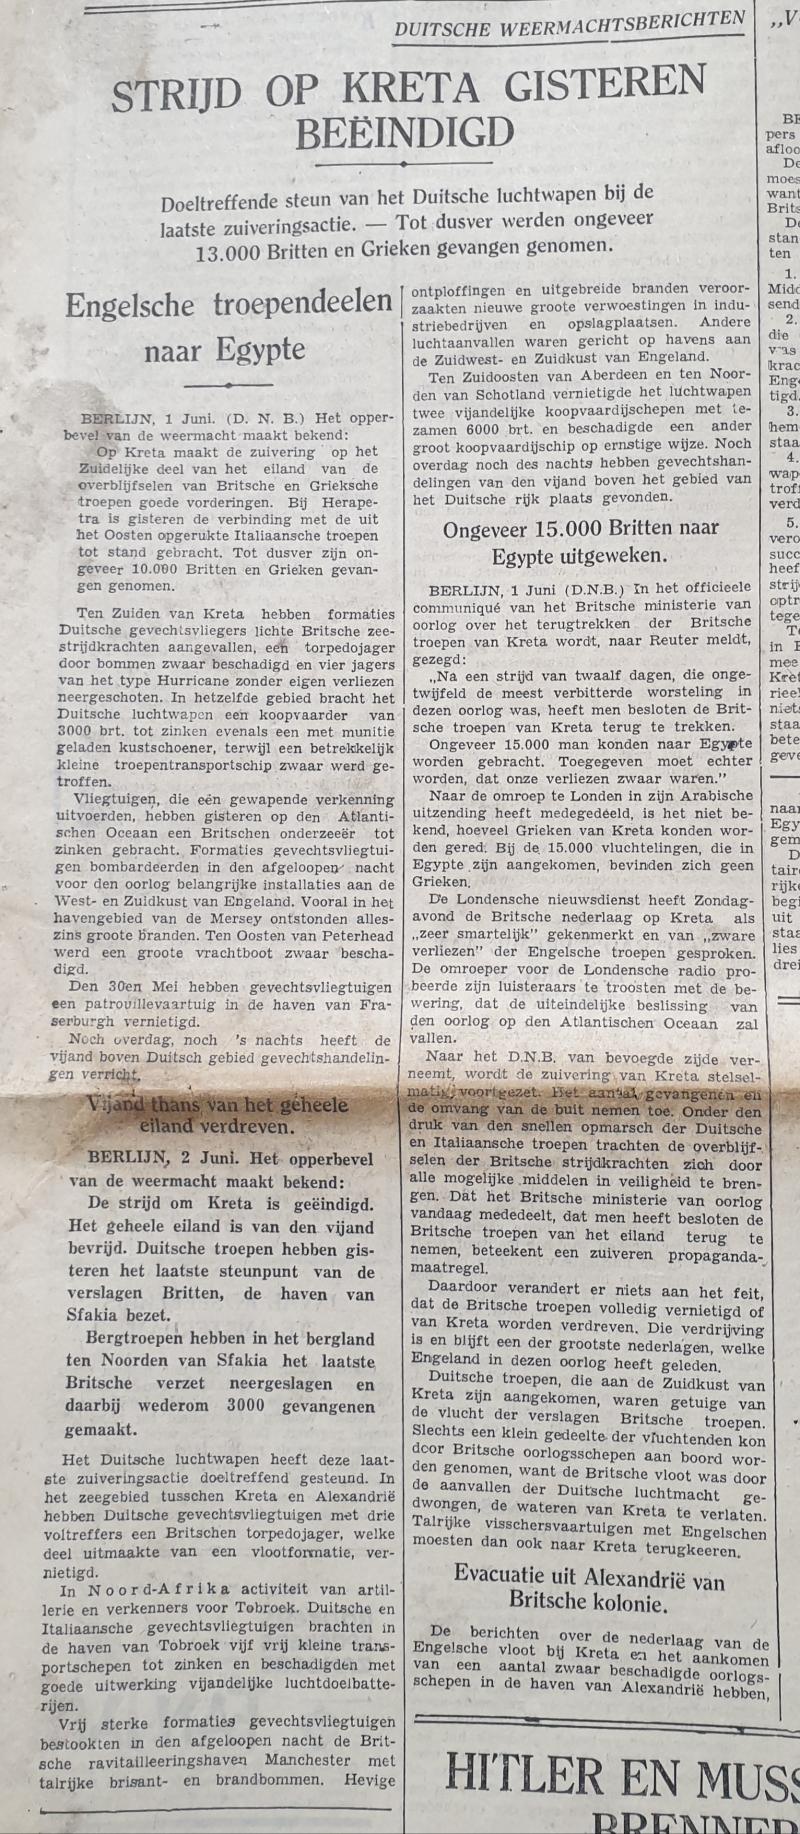 Dutch Newspaper ending Battle of Crete 3 June 1941.